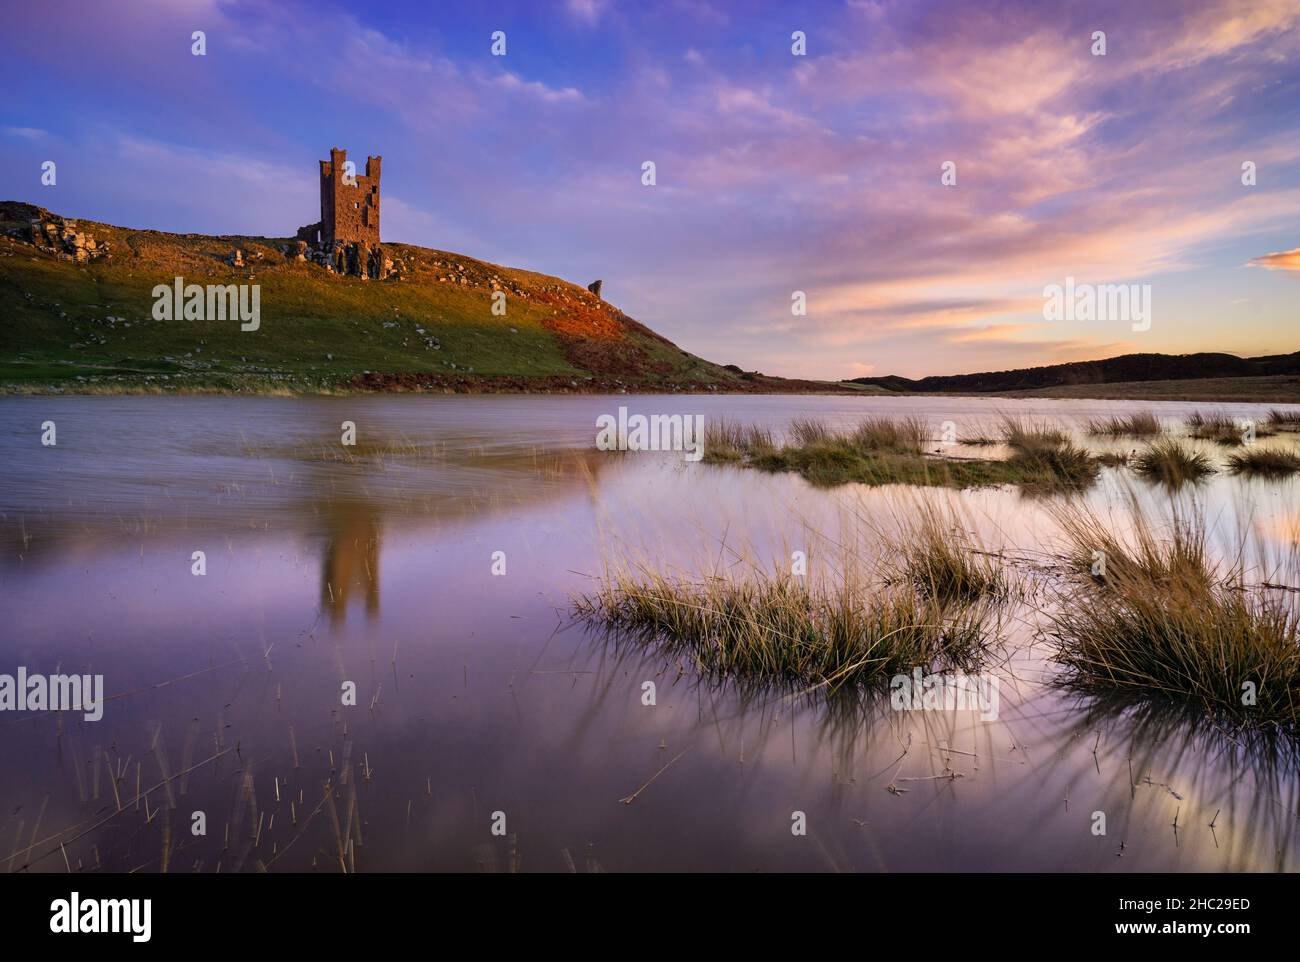 Château de Dunstanburgh réflexions au coucher du soleil Embleton Bay Dunstanborough Northumberland Coast Angleterre GB Royaume-Uni Europe Banque D'Images